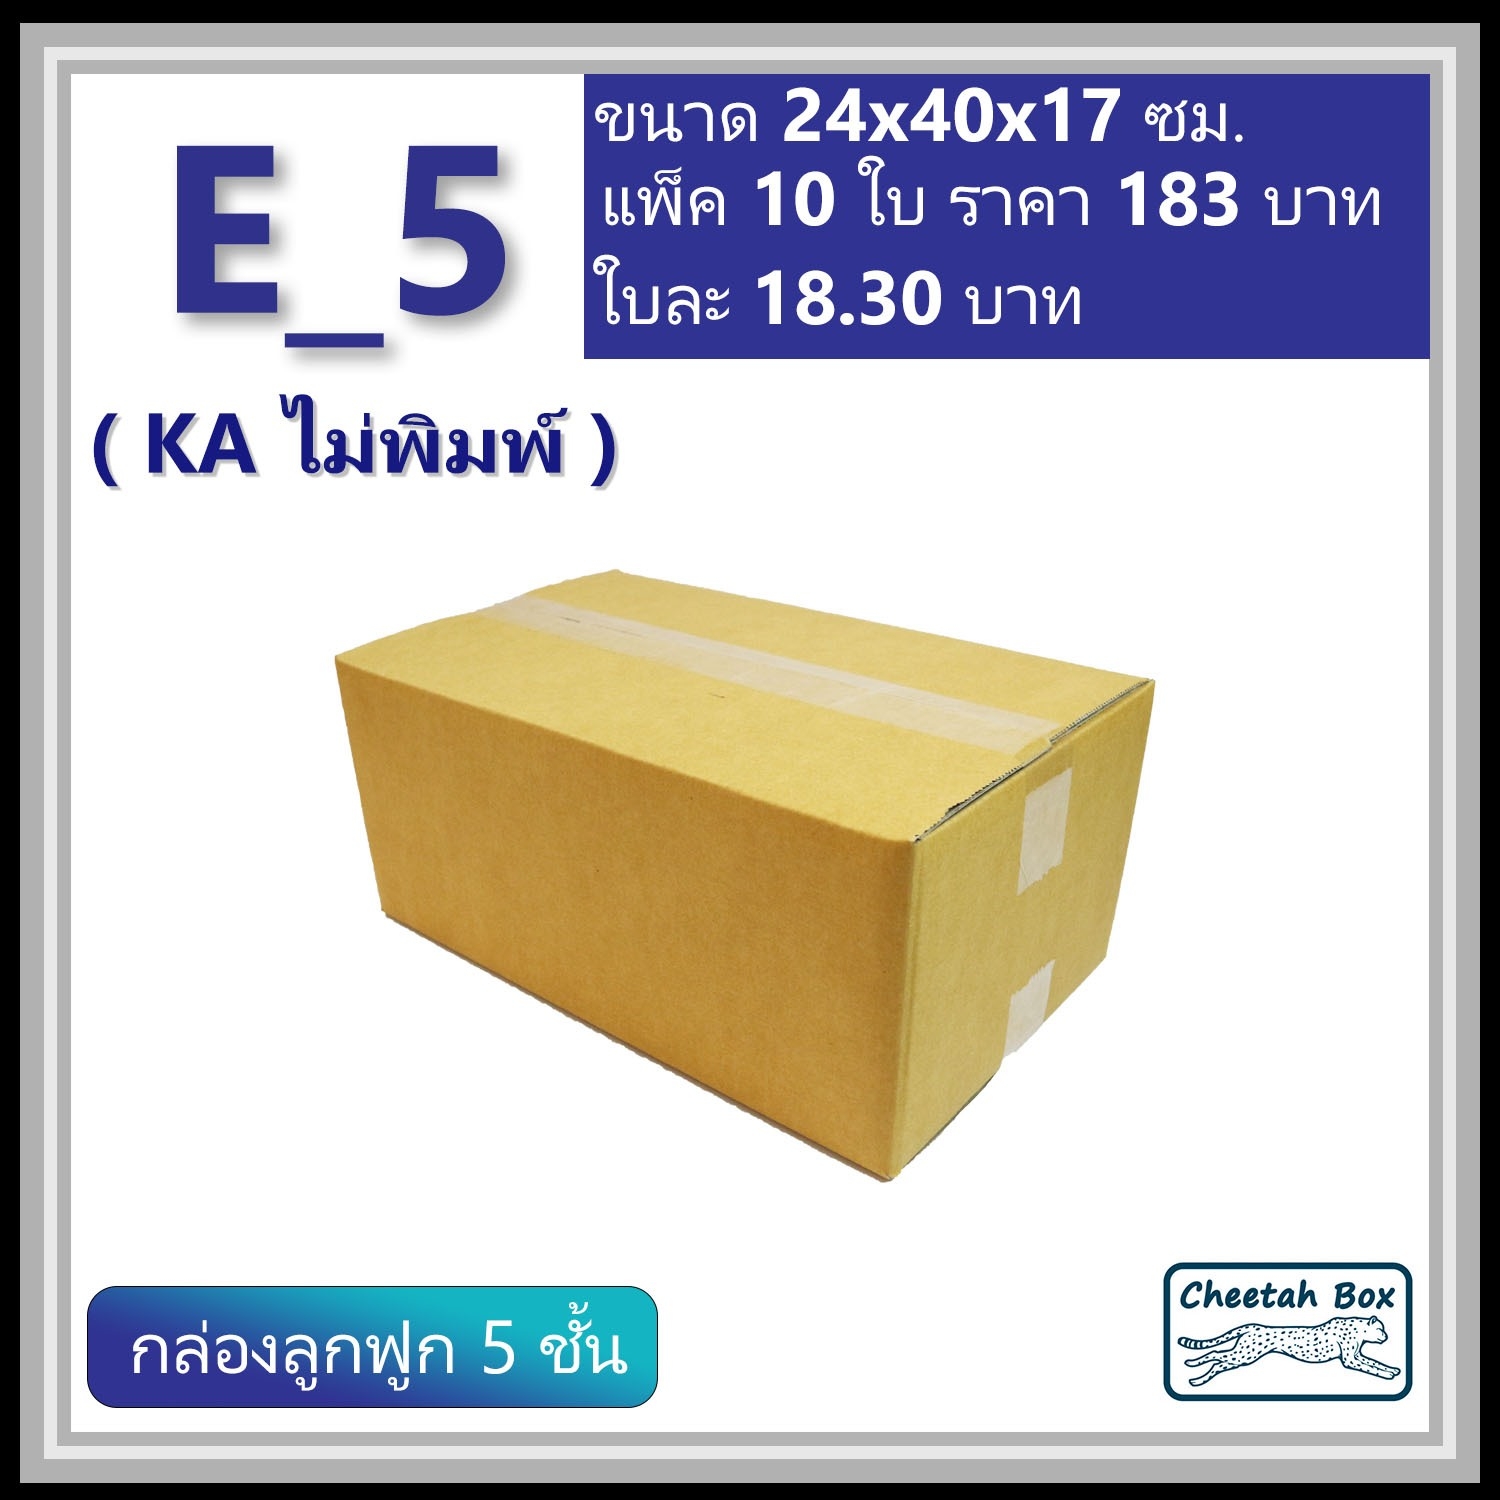 กล่องพัสดุ 5 ชั้น E_5 (จ) (KA125) เคลือบกันชิ้น พิมพ์ลาย ลูกฟูก 5 ชั้น (Cheetah Box ขนาด 24*40*17 CM)